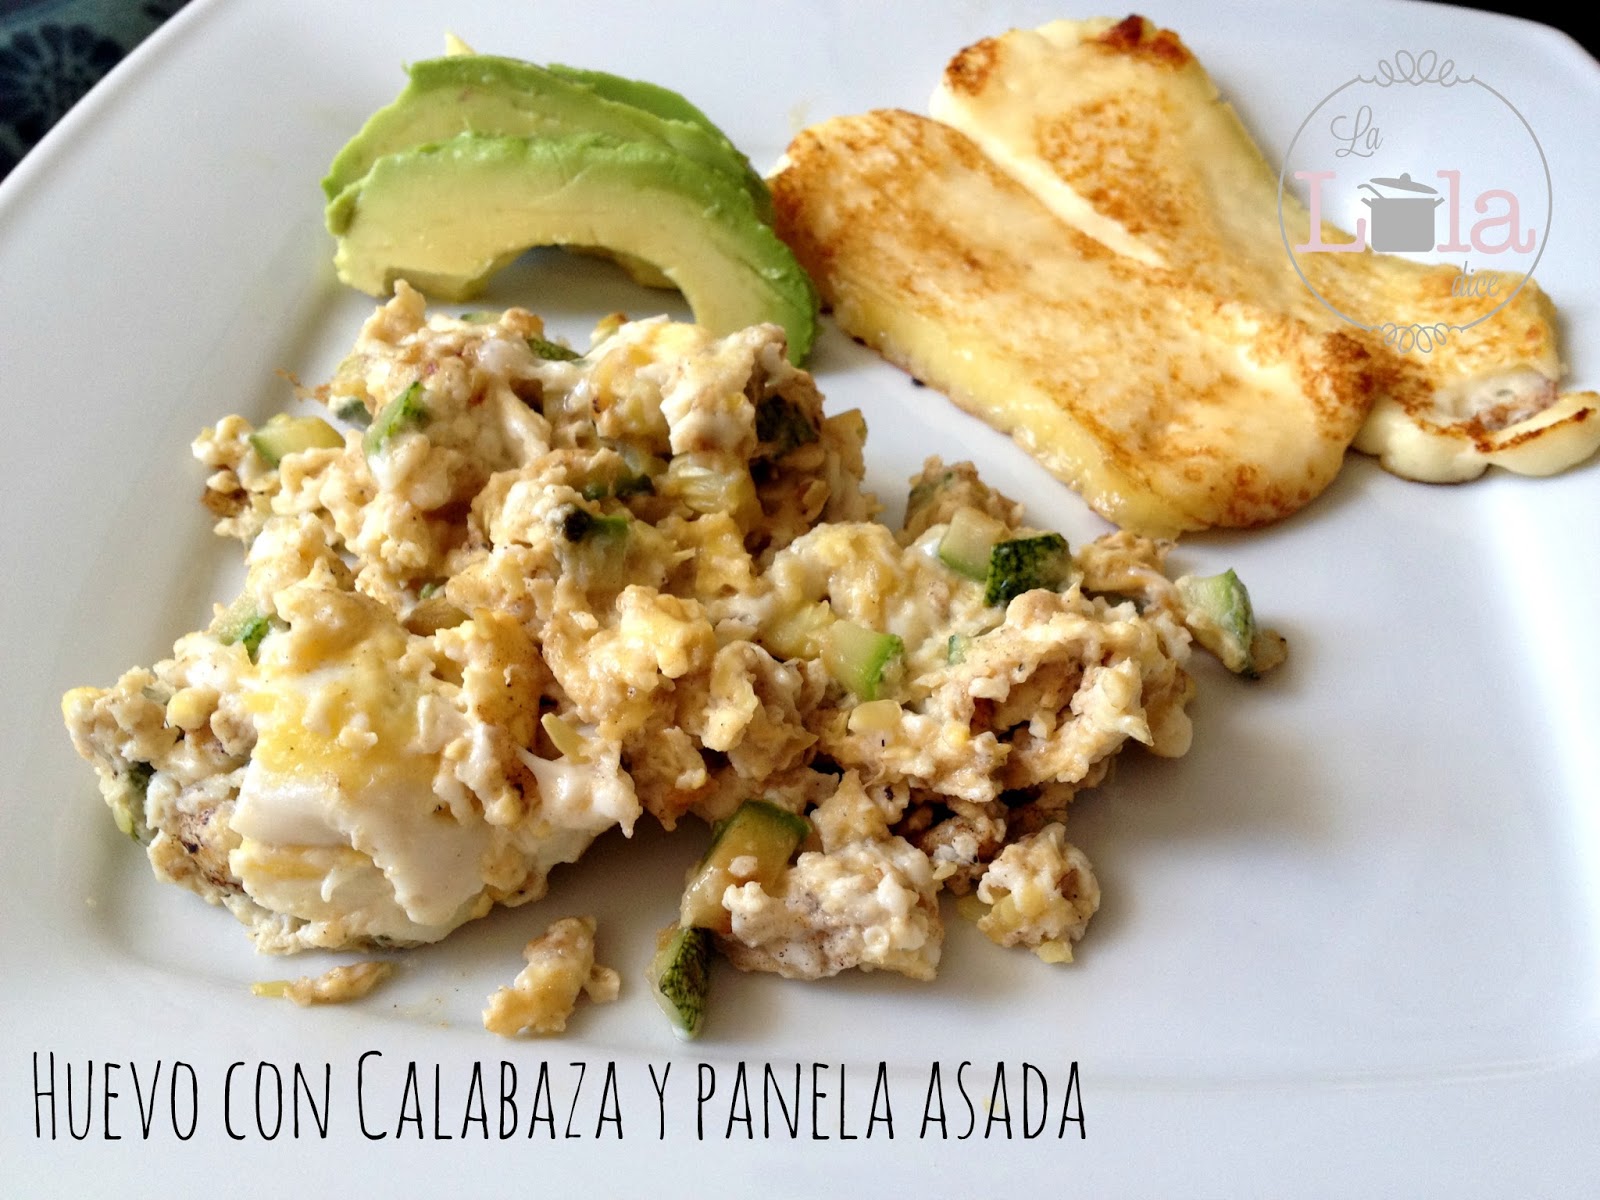 Huevo con Calabaza y panela asada | La Lola Dice